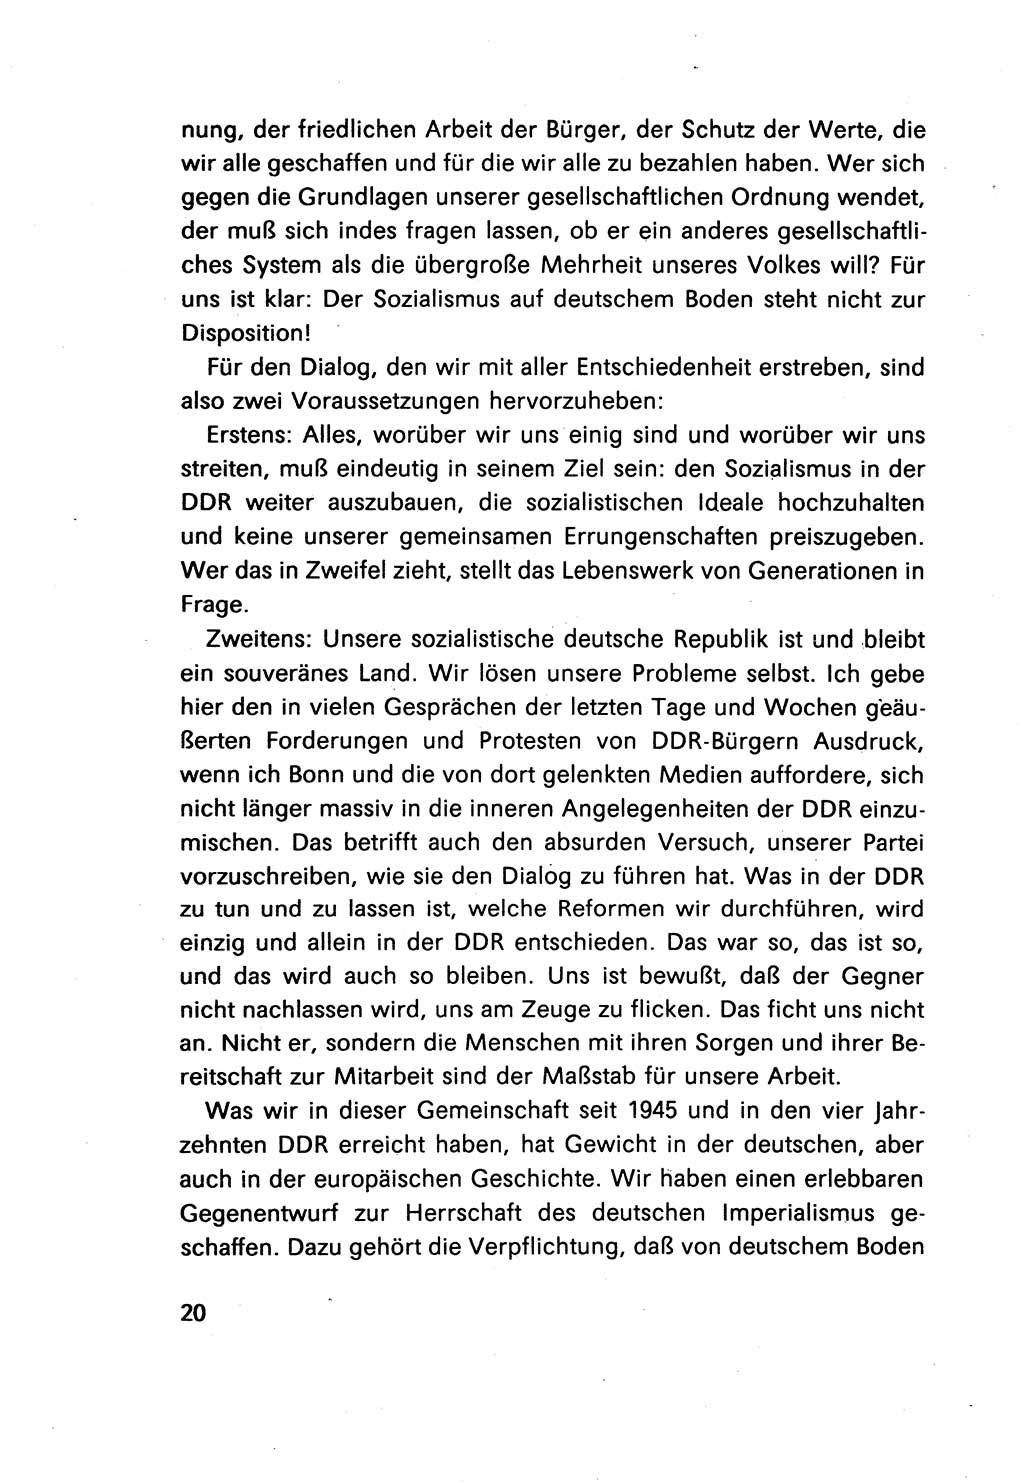 Erklärung des Politbüros des ZK (Zentralkomitee) der SED (Sozialistische Einheitspartei Deutschlands) [Deutsche Demokratische Republik (DDR)] 1989, Seite 20 (Erkl. PB ZK SED DDR 1989, S. 20)